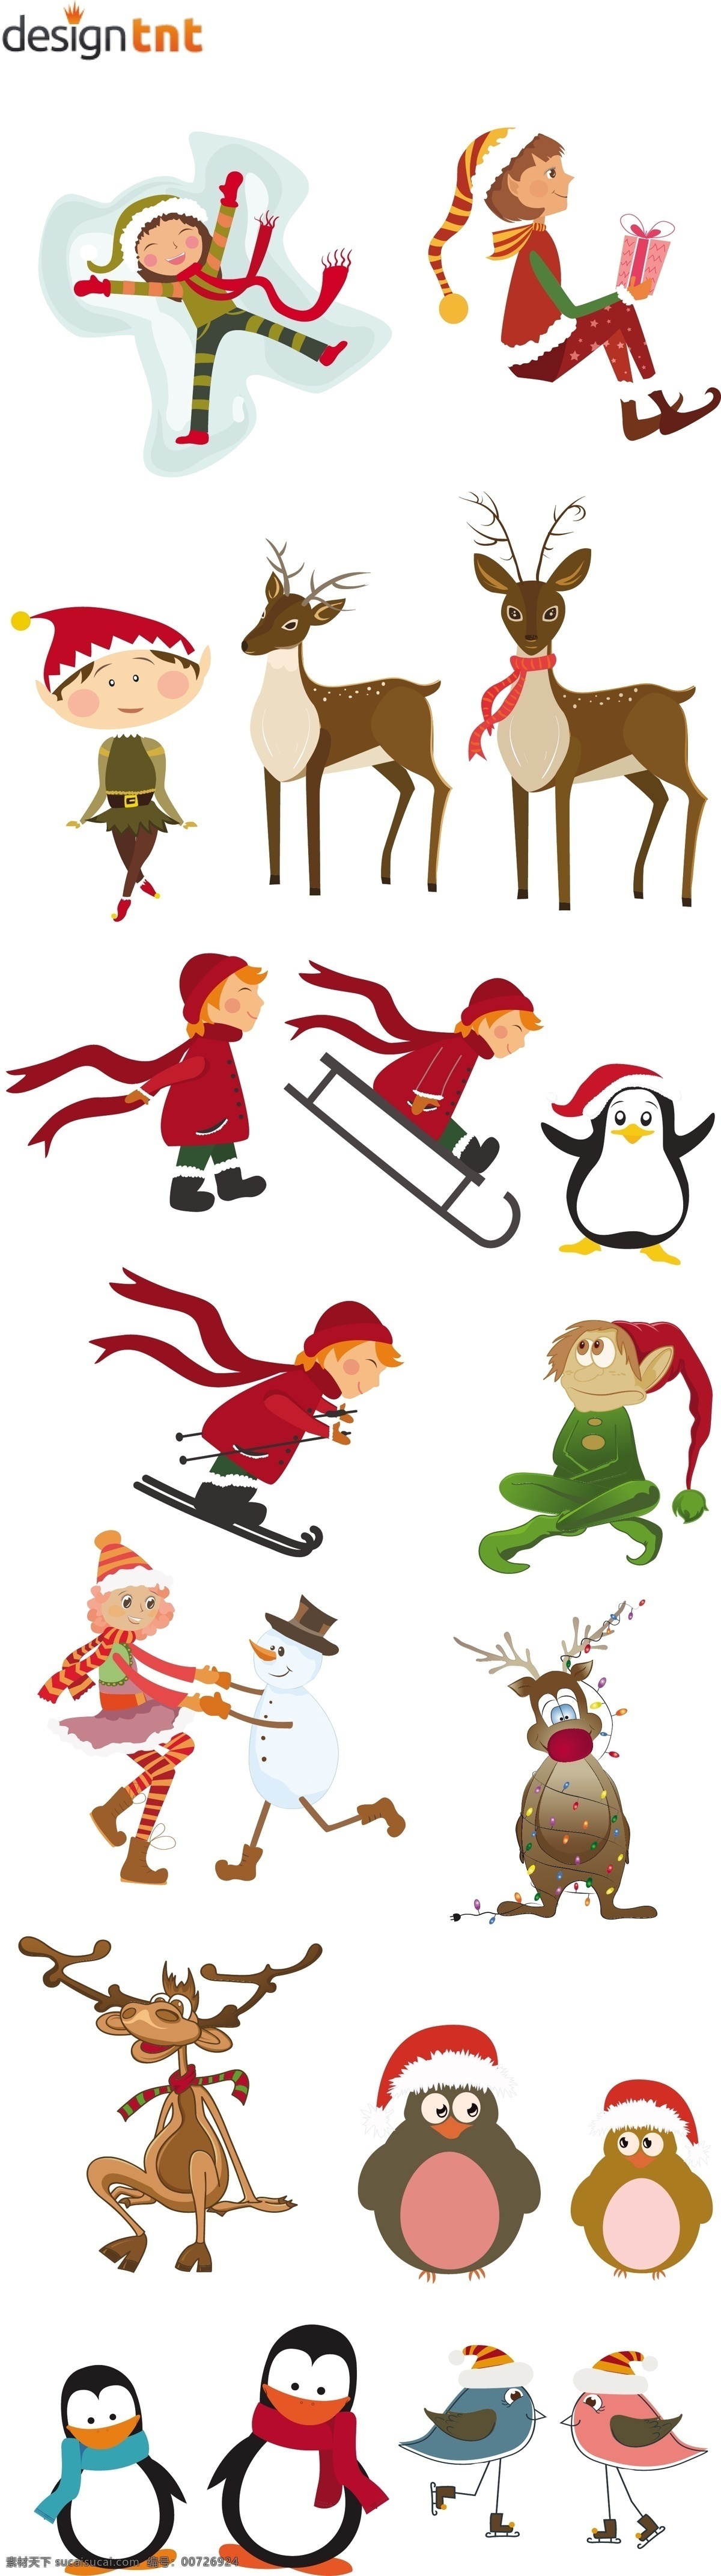 圣诞 装饰 儿童 动物 设置 矢量 儿童滑雪 圣诞节装饰 小鹿